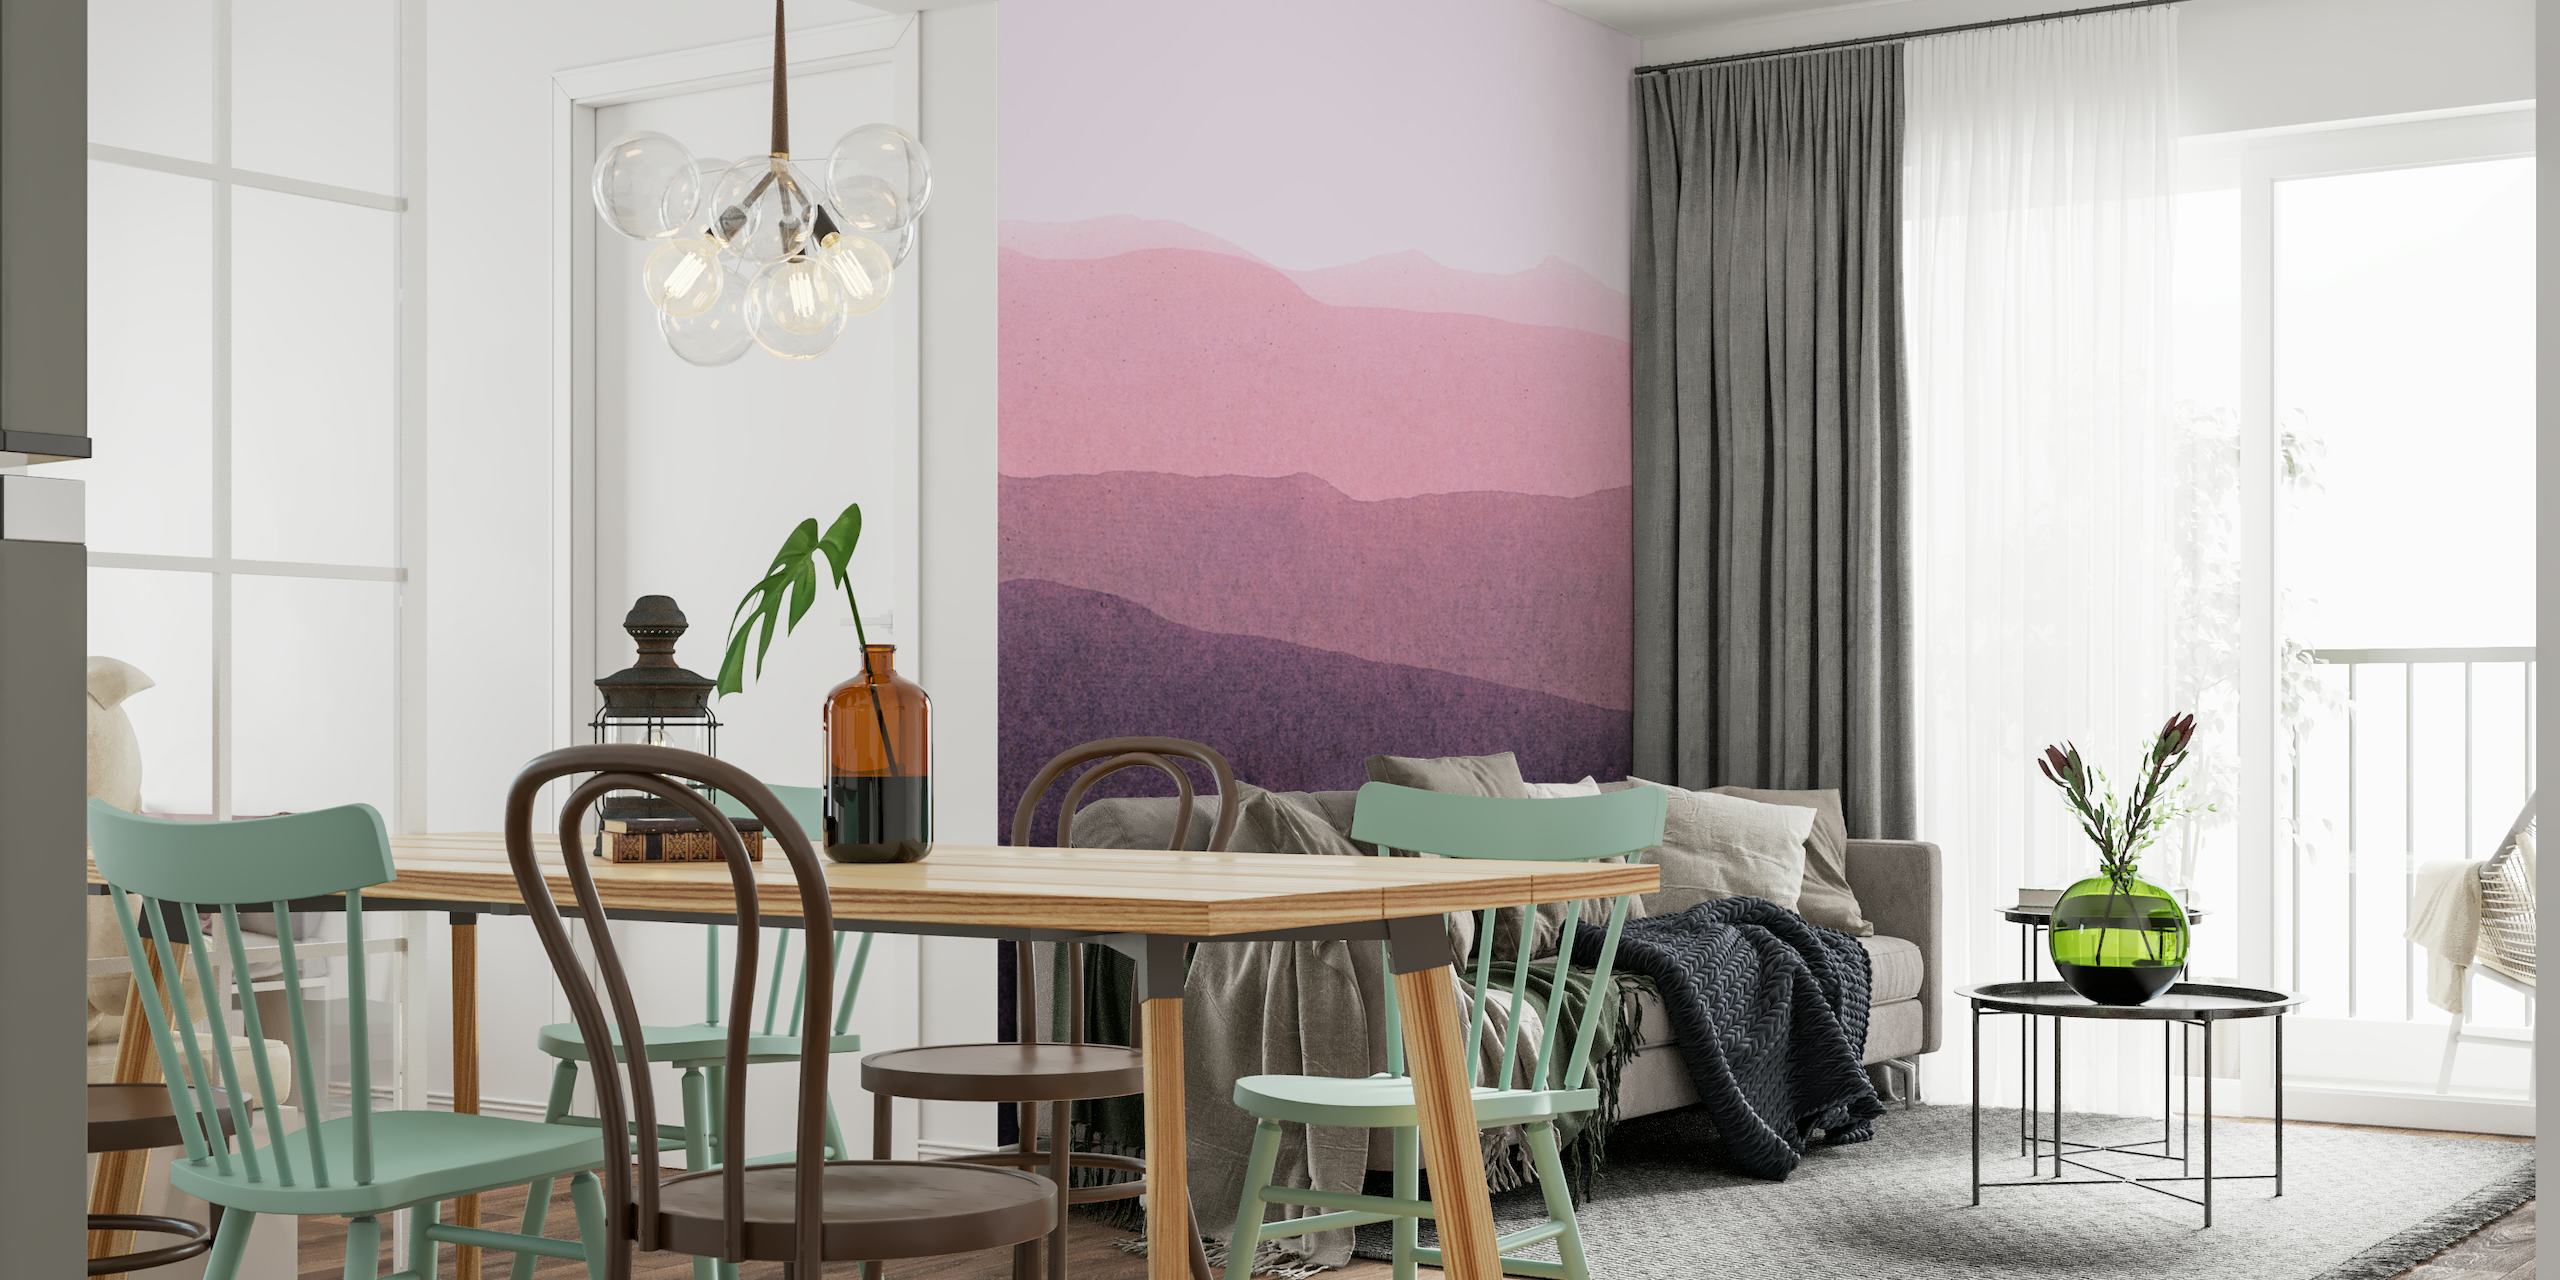 Un murale che mostra un sereno paesaggio sfumato con colline sovrapposte in tonalità dal rosa scuro al viola intenso